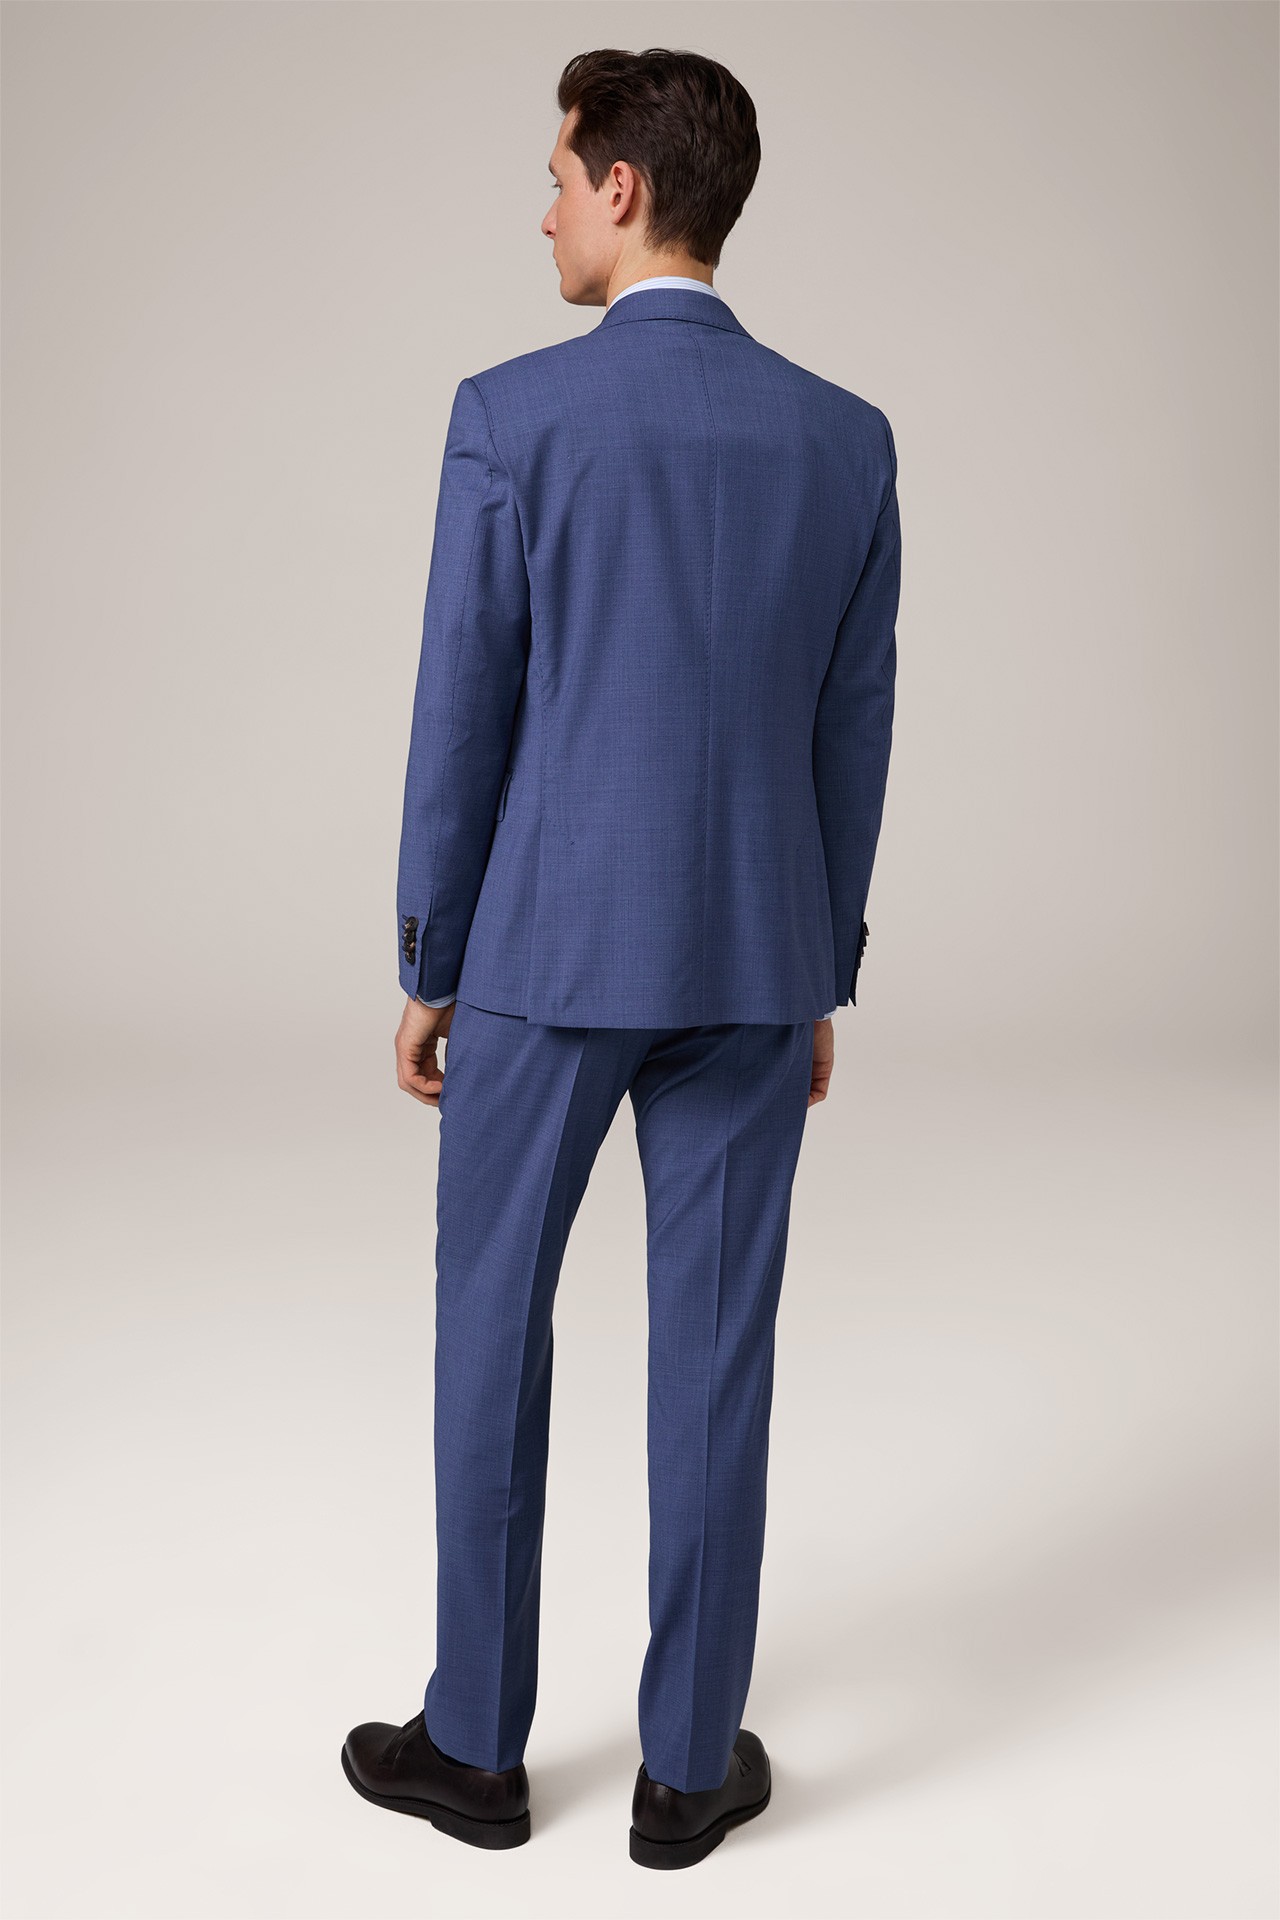 Sono-Bene Virgin Wool Suit in Textured Blue